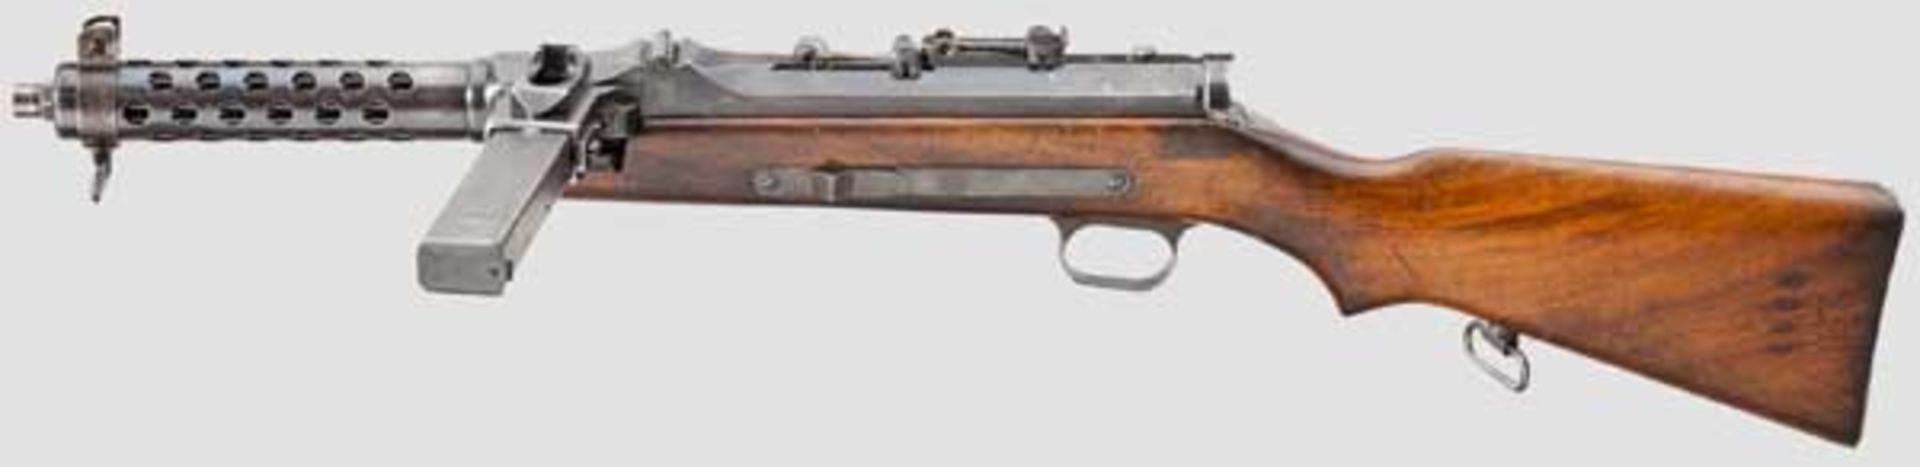 MP 34(ö), Steyr (Pistola-metralhadora 9 mm m/942 Steyr), DEKO Kal. 9 mm Para. Nummerngleich.